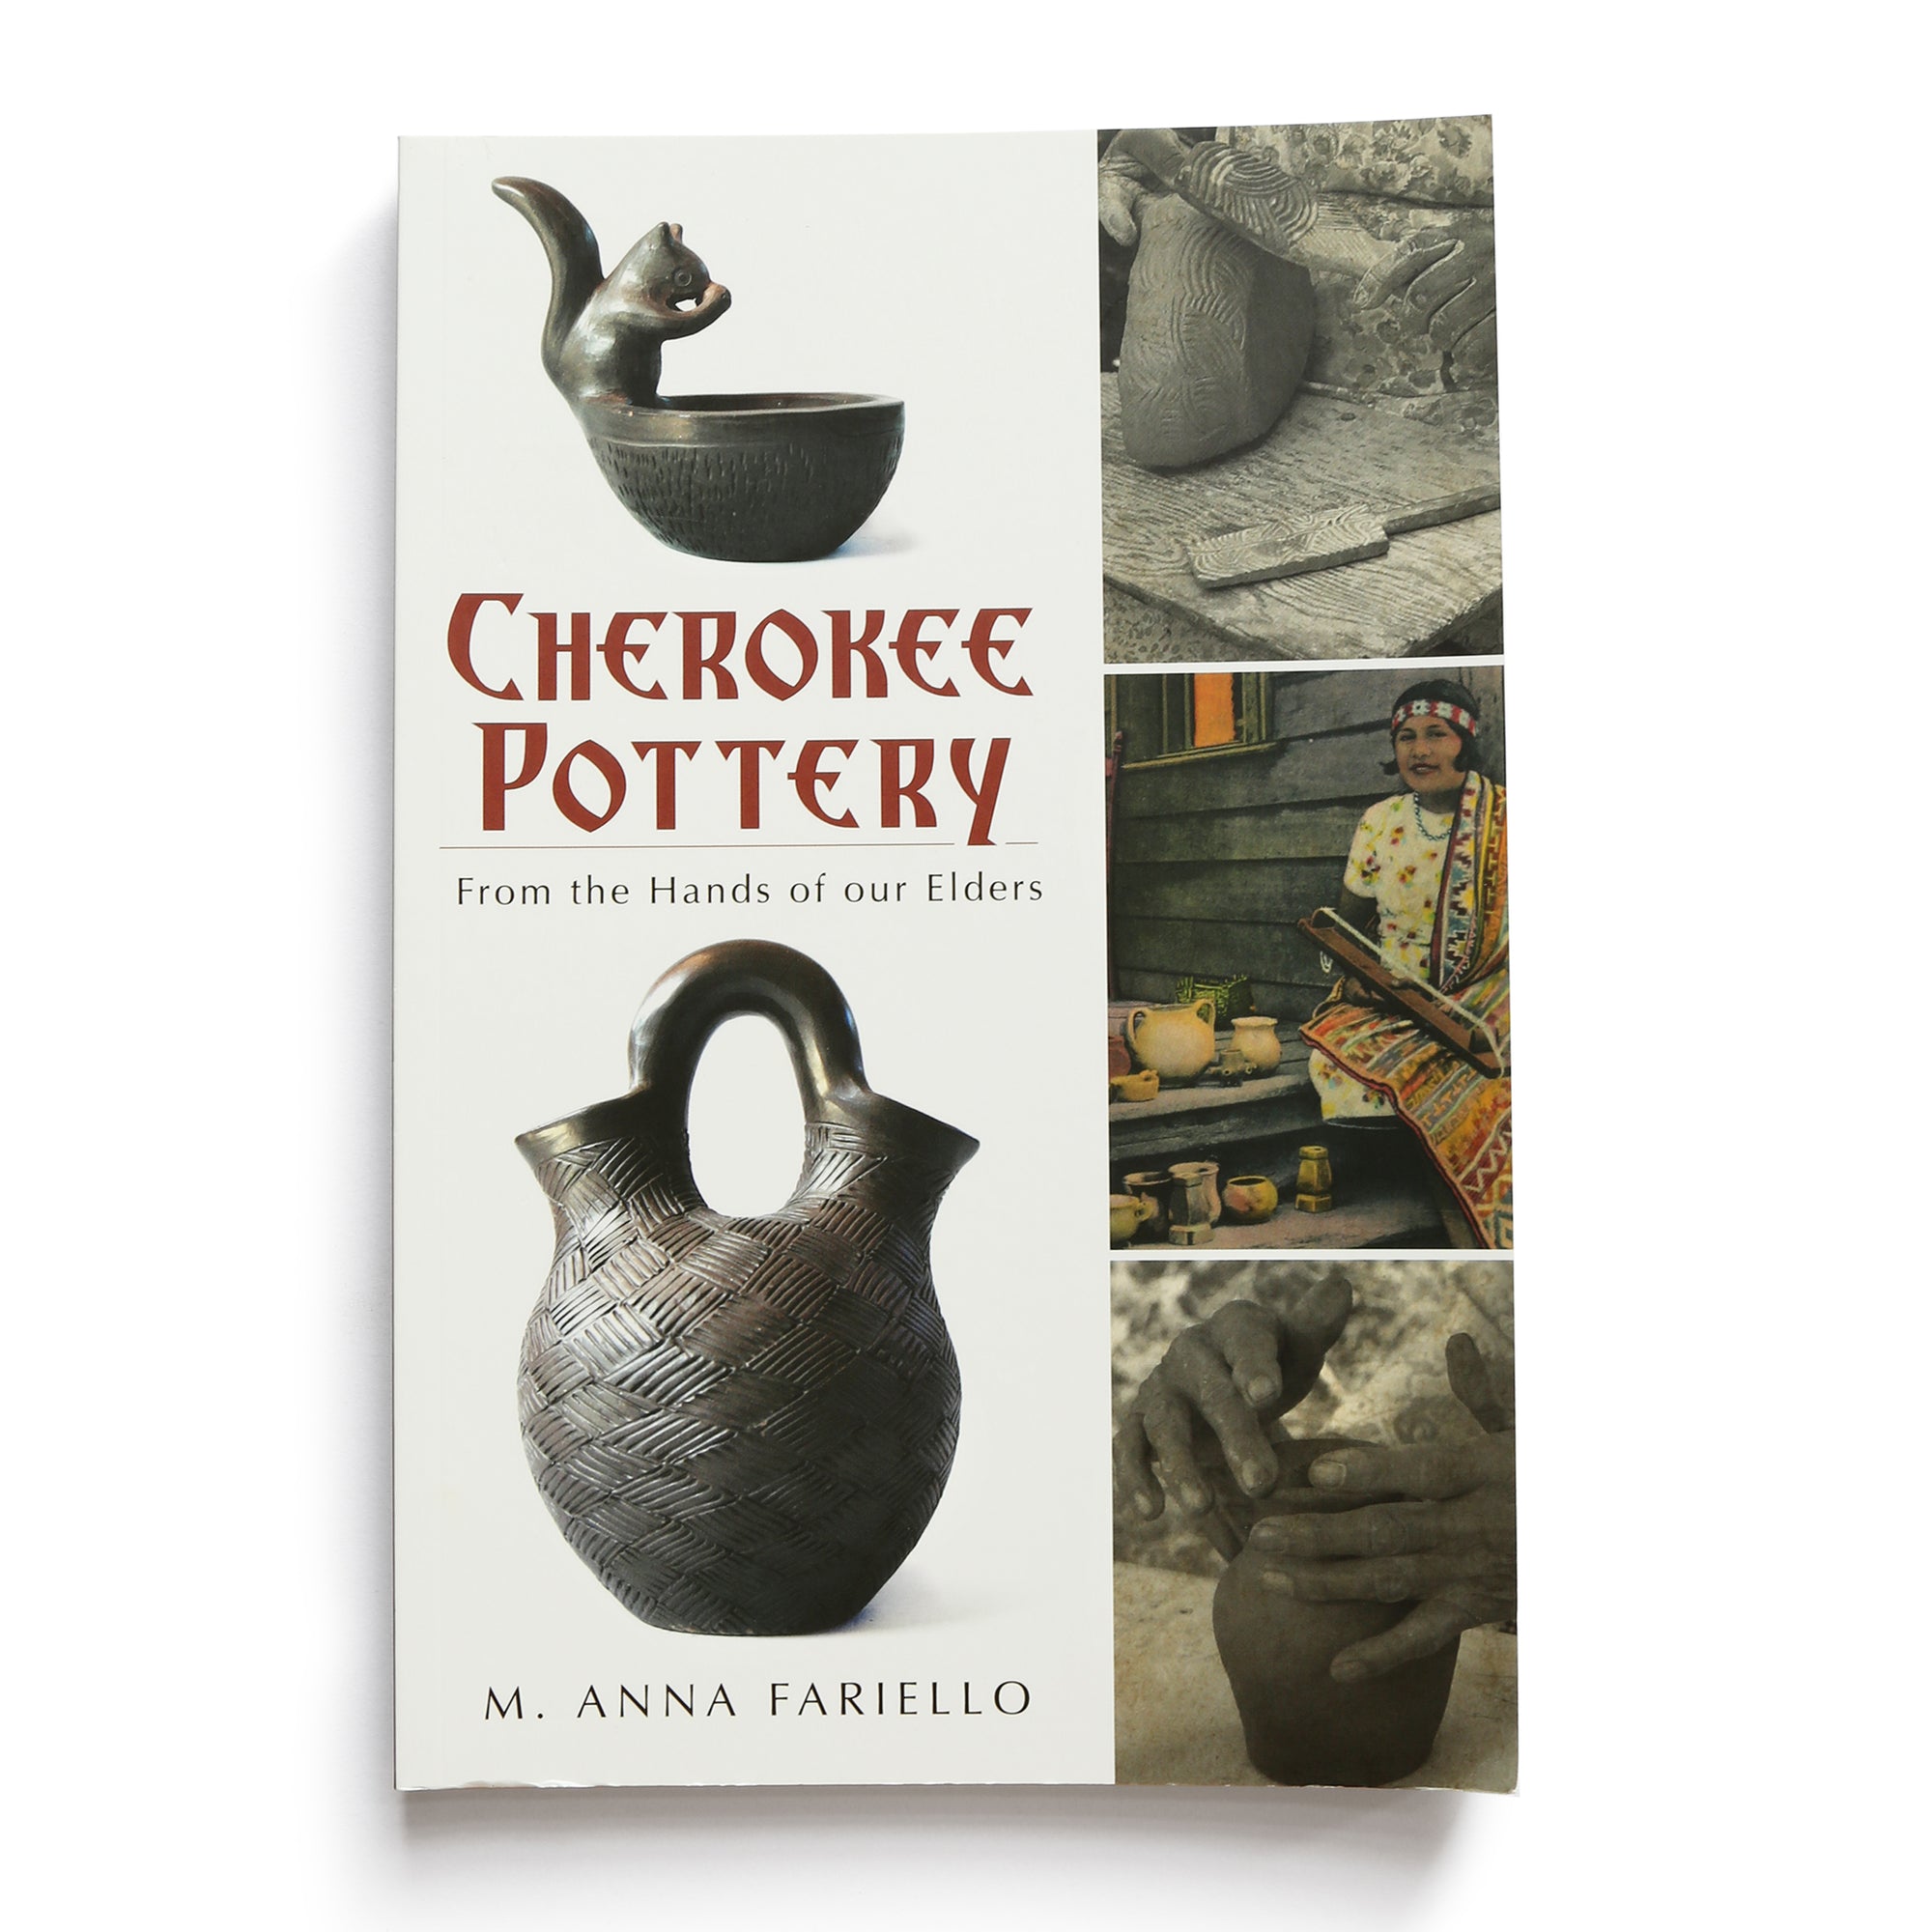 Cherokee Pottery